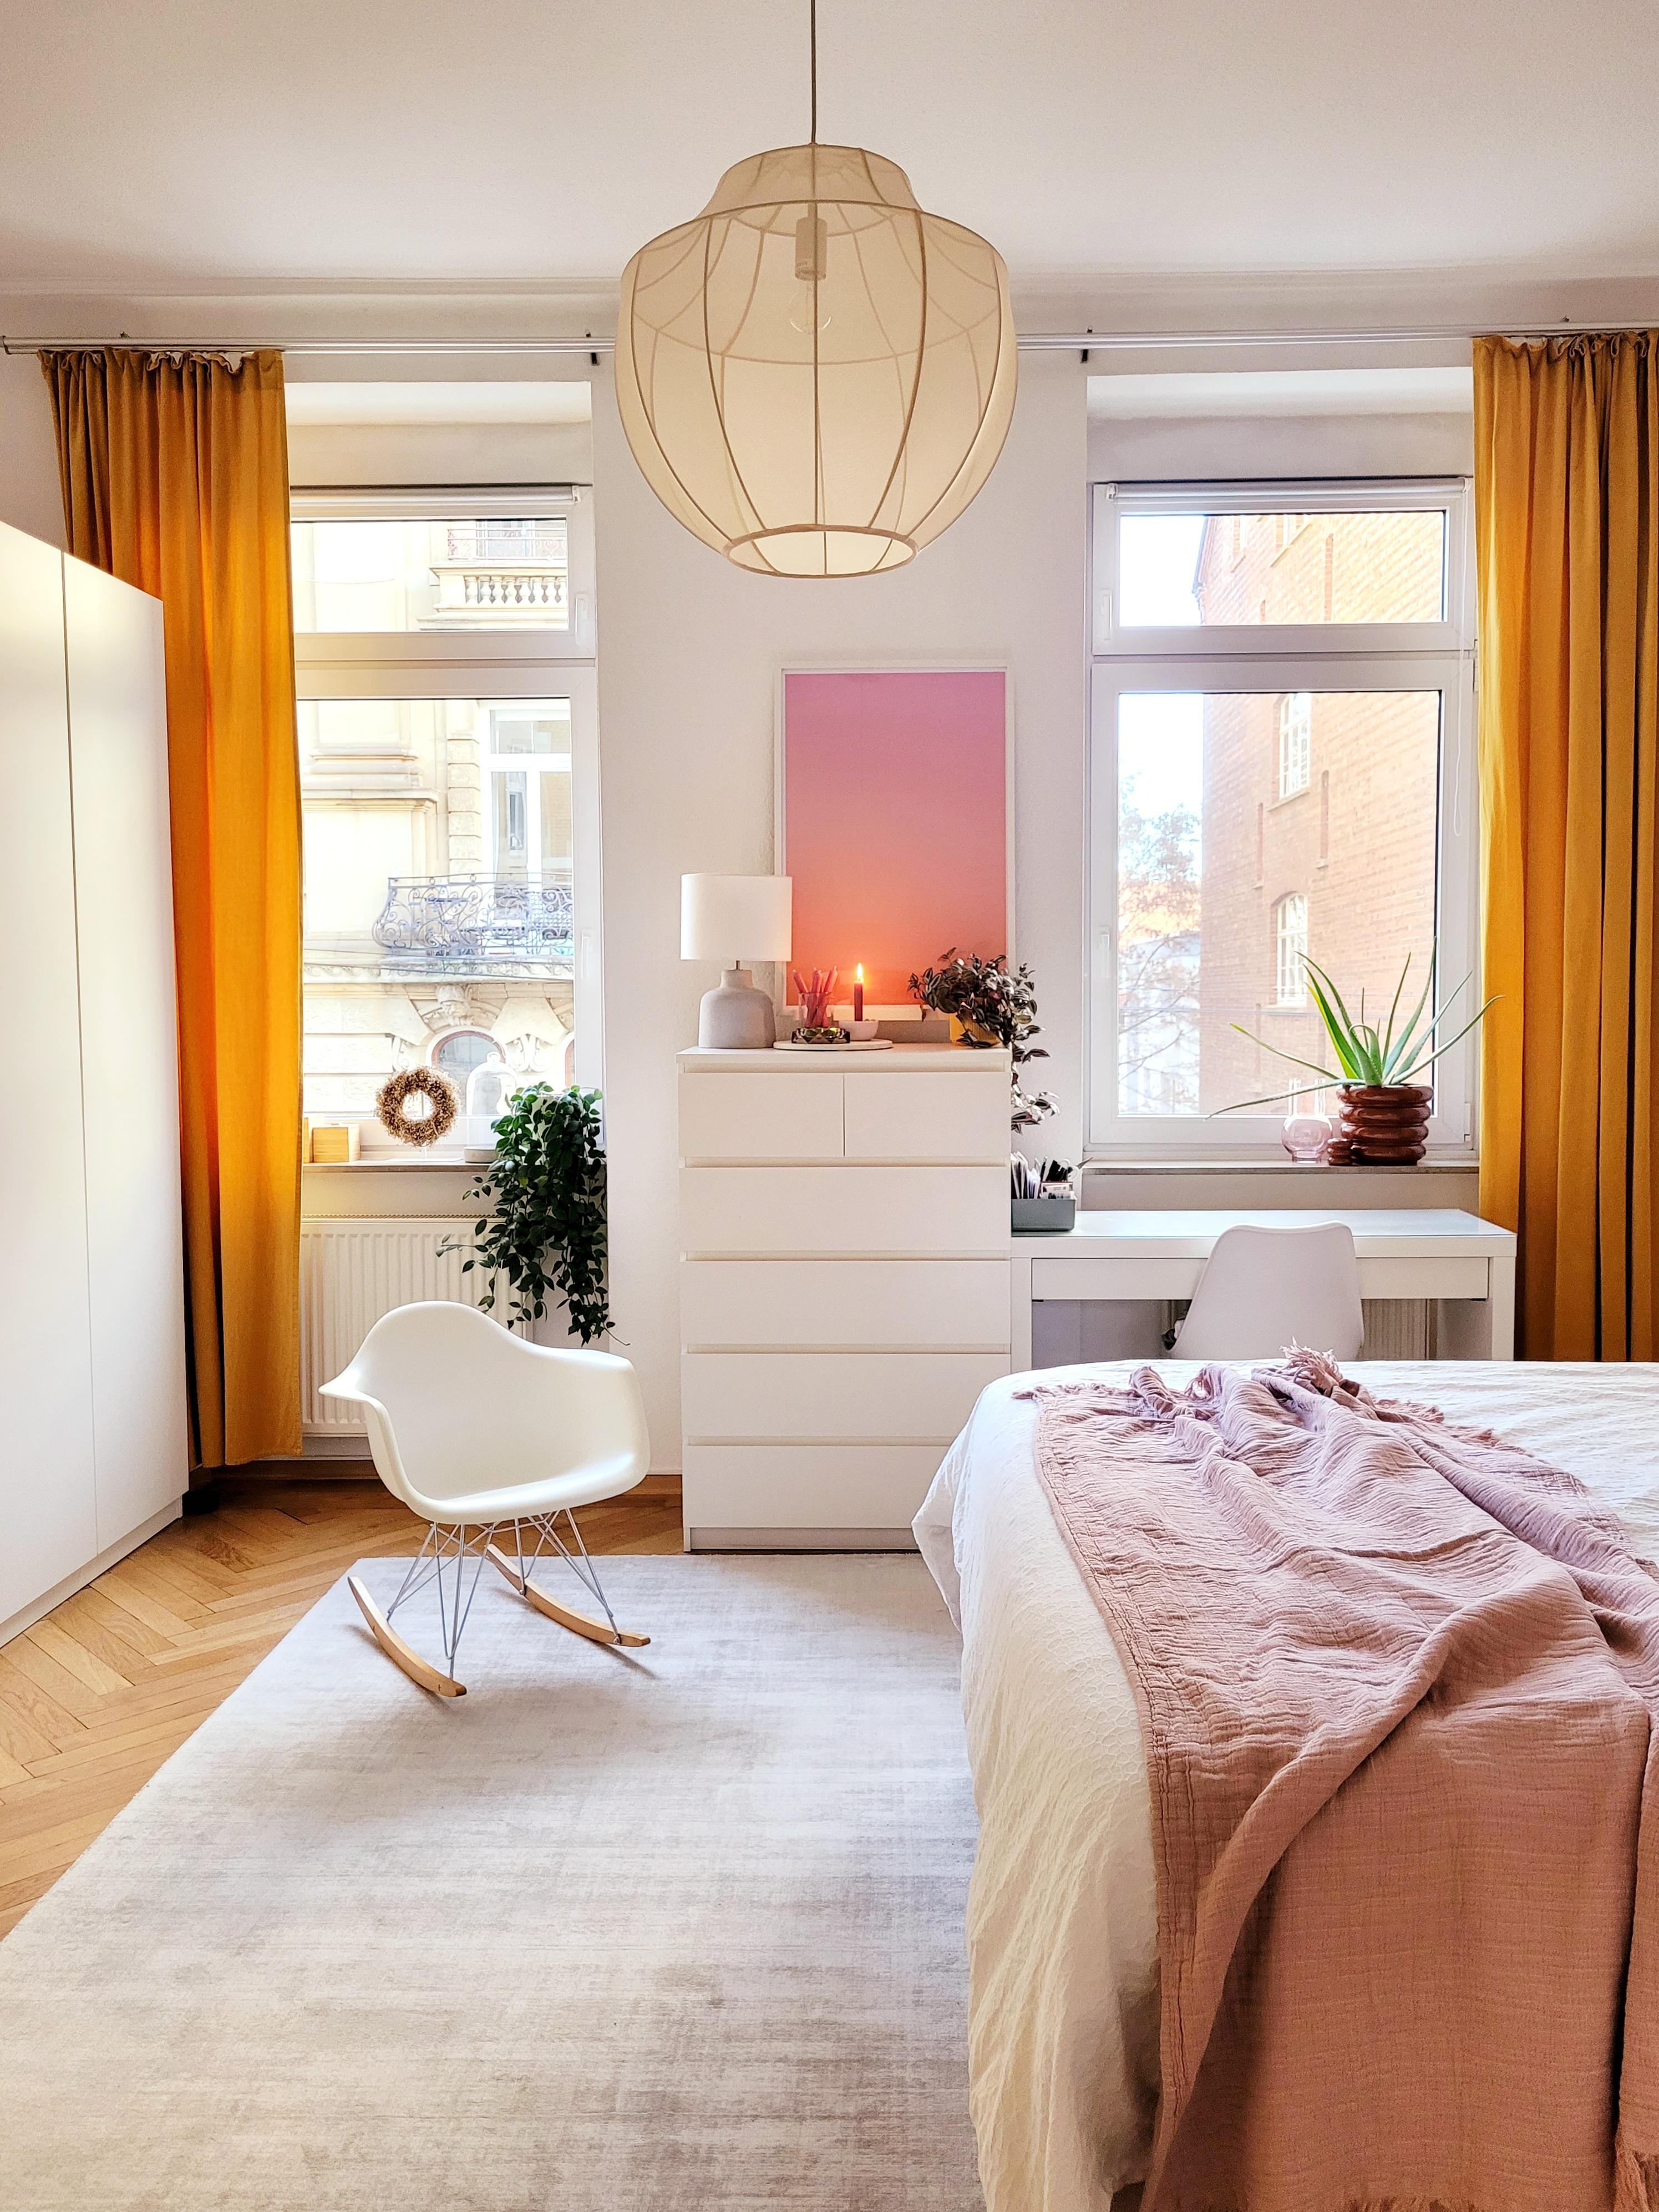 Guten morgen Sonntag!
#Altbau 
#Schlafzimmer 
#gemütlich 
#Kommode
#Schaukelstuhl 
#Vitra
#Ikea
#bedroom 
#farbenfroh 
#Lampe 
